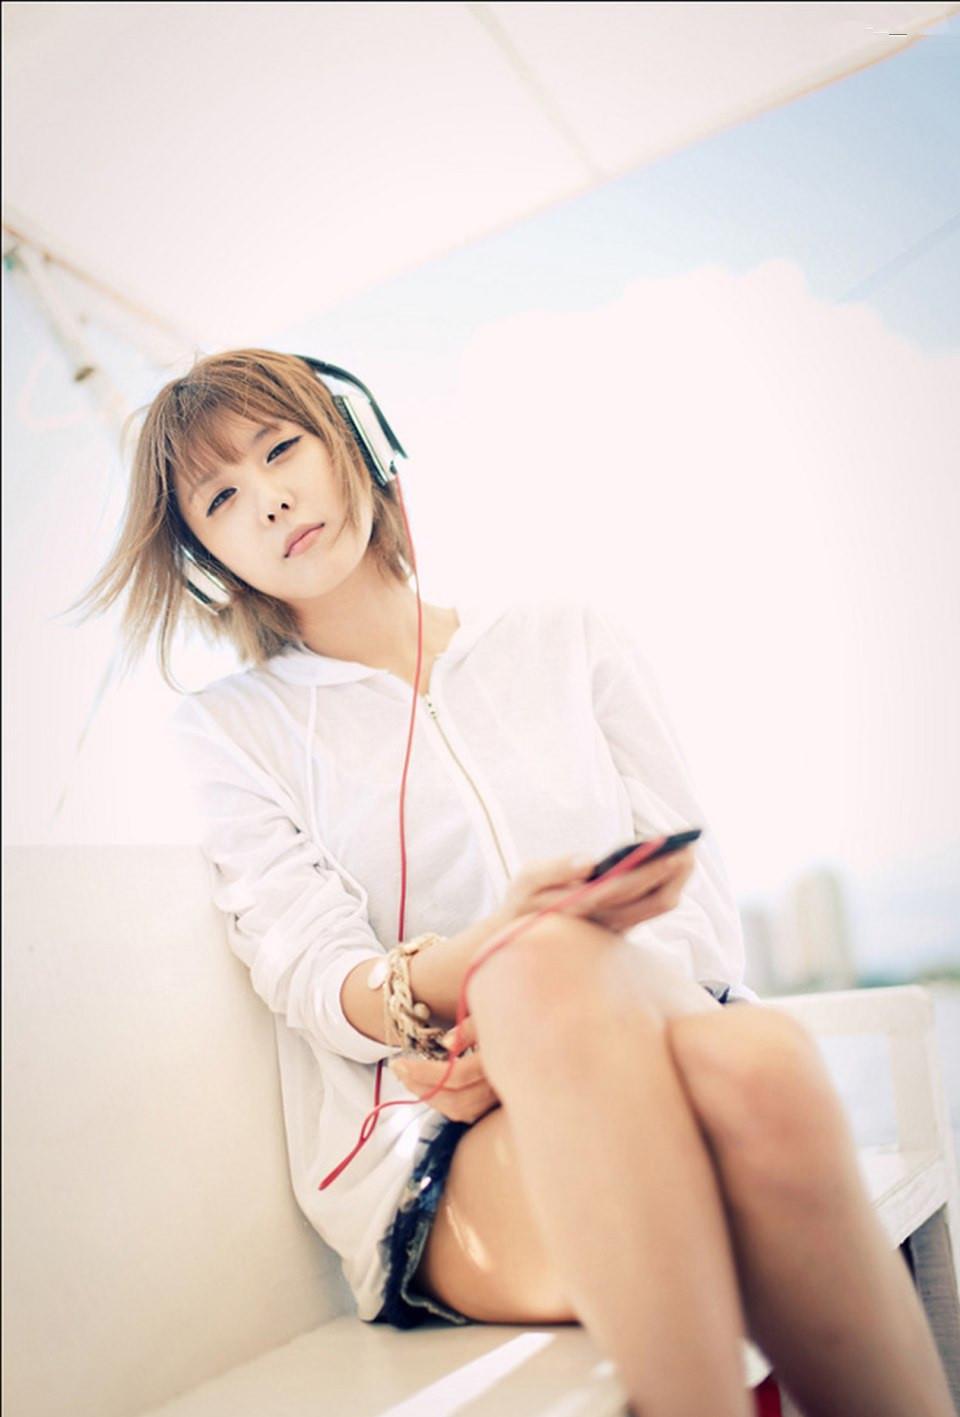 韩国超模许允美海边悠闲的听音乐,韩国超模许允美海边悠闲的听音乐